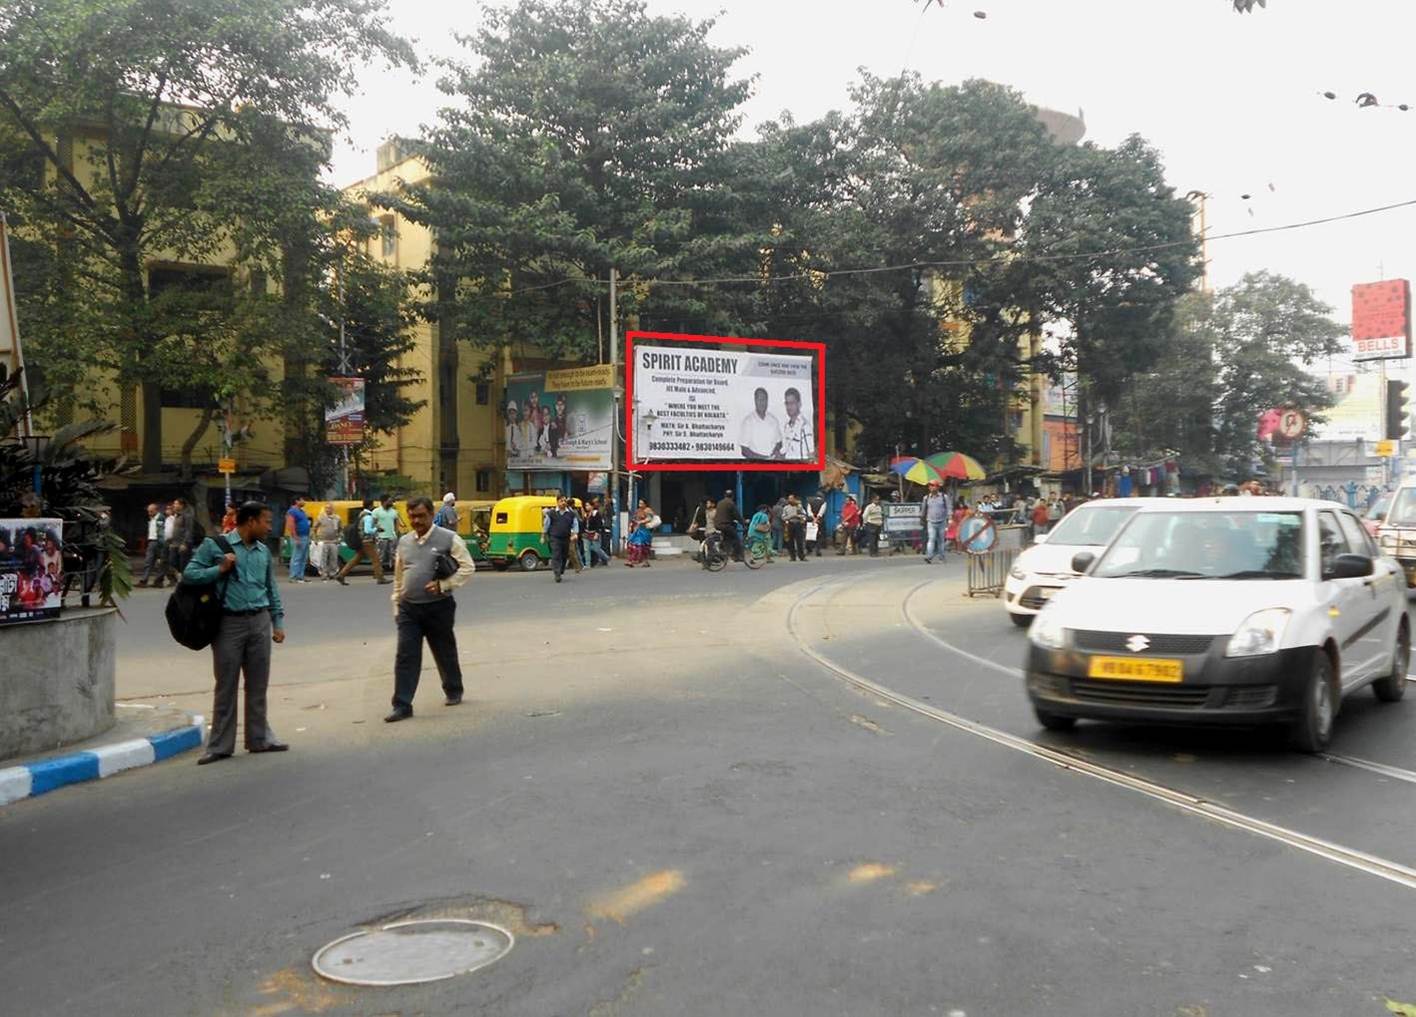 Naktala, Kolkata